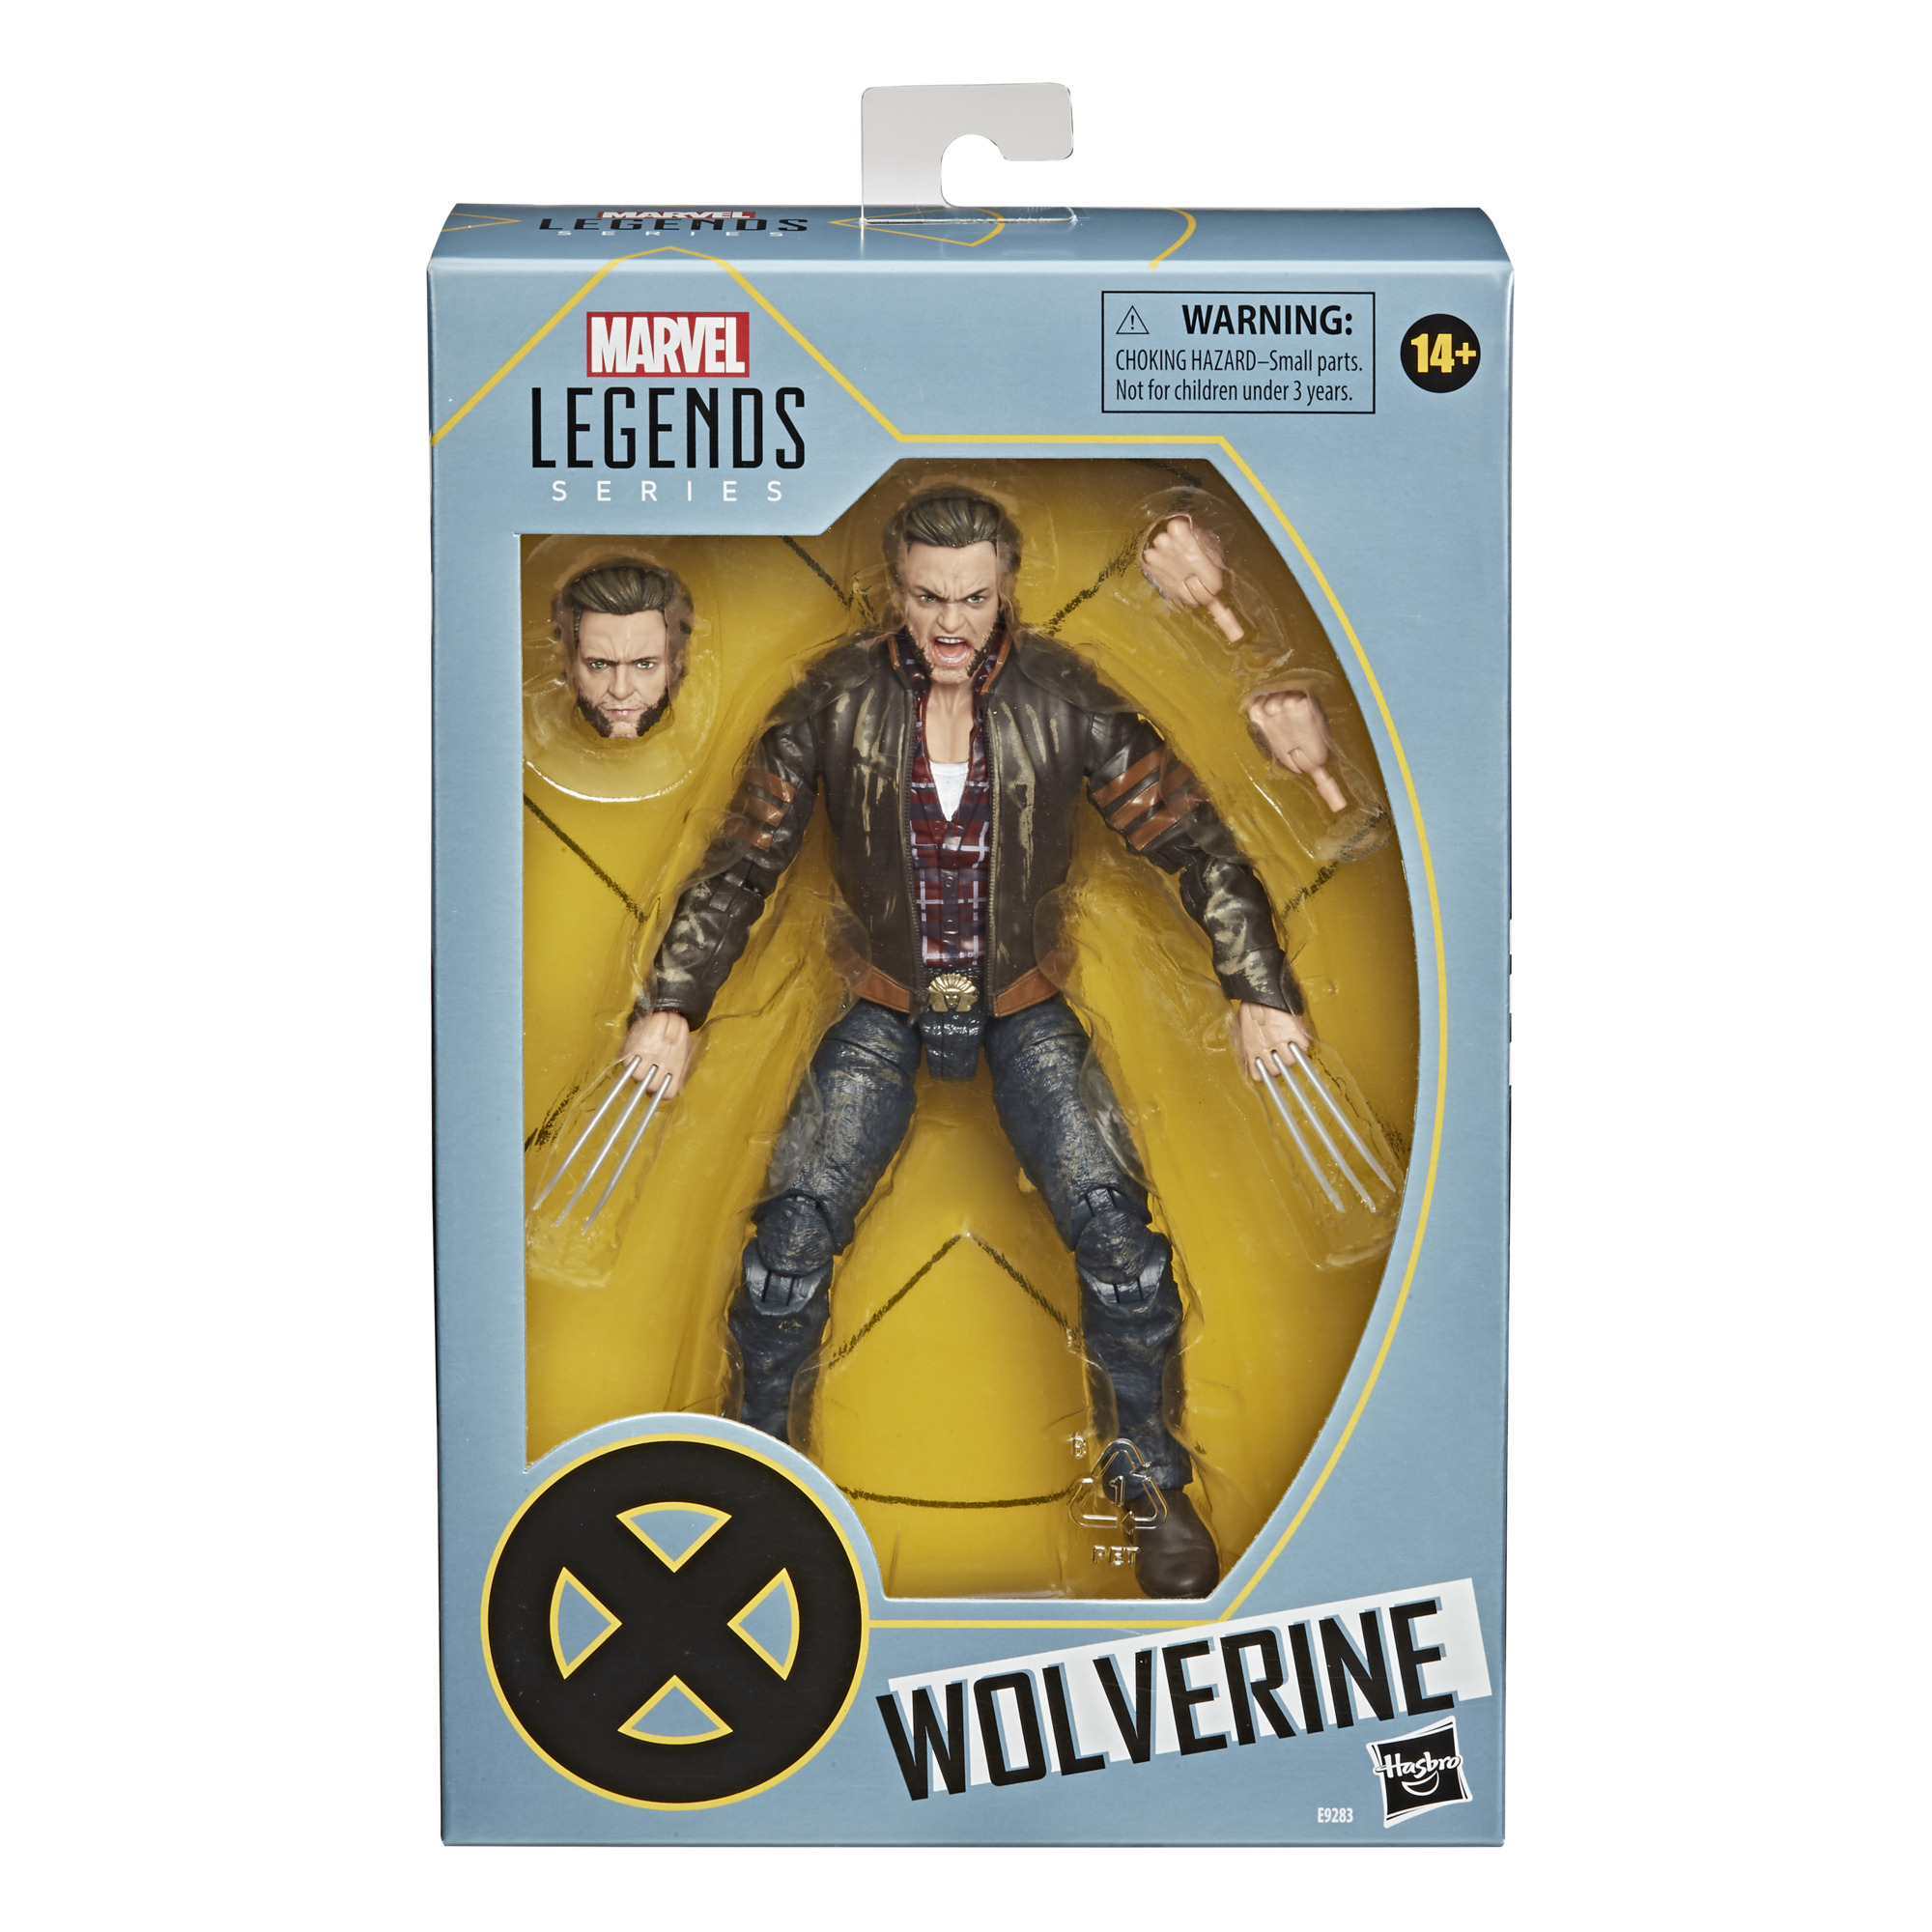 Wolverine in package